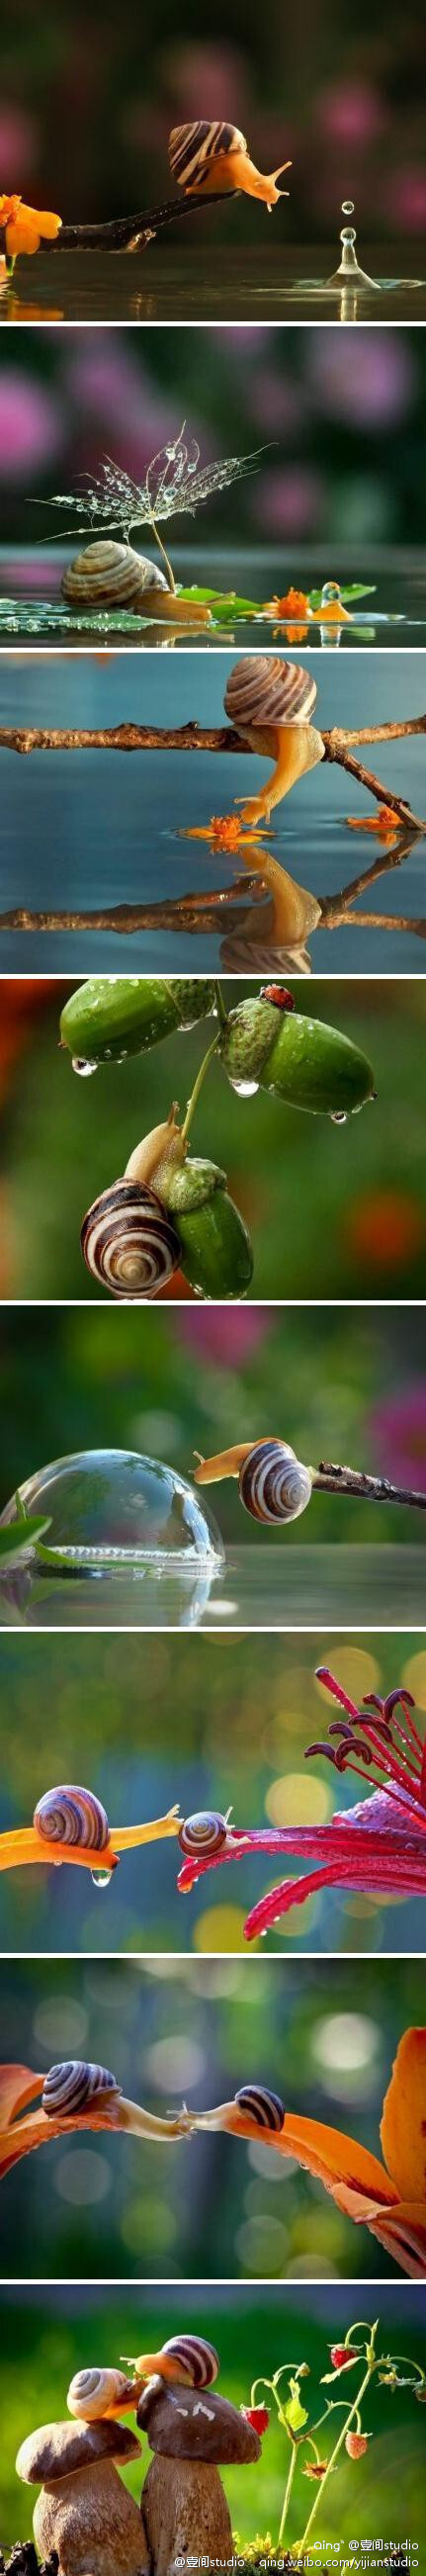 情侣蜗牛打伞图片图片